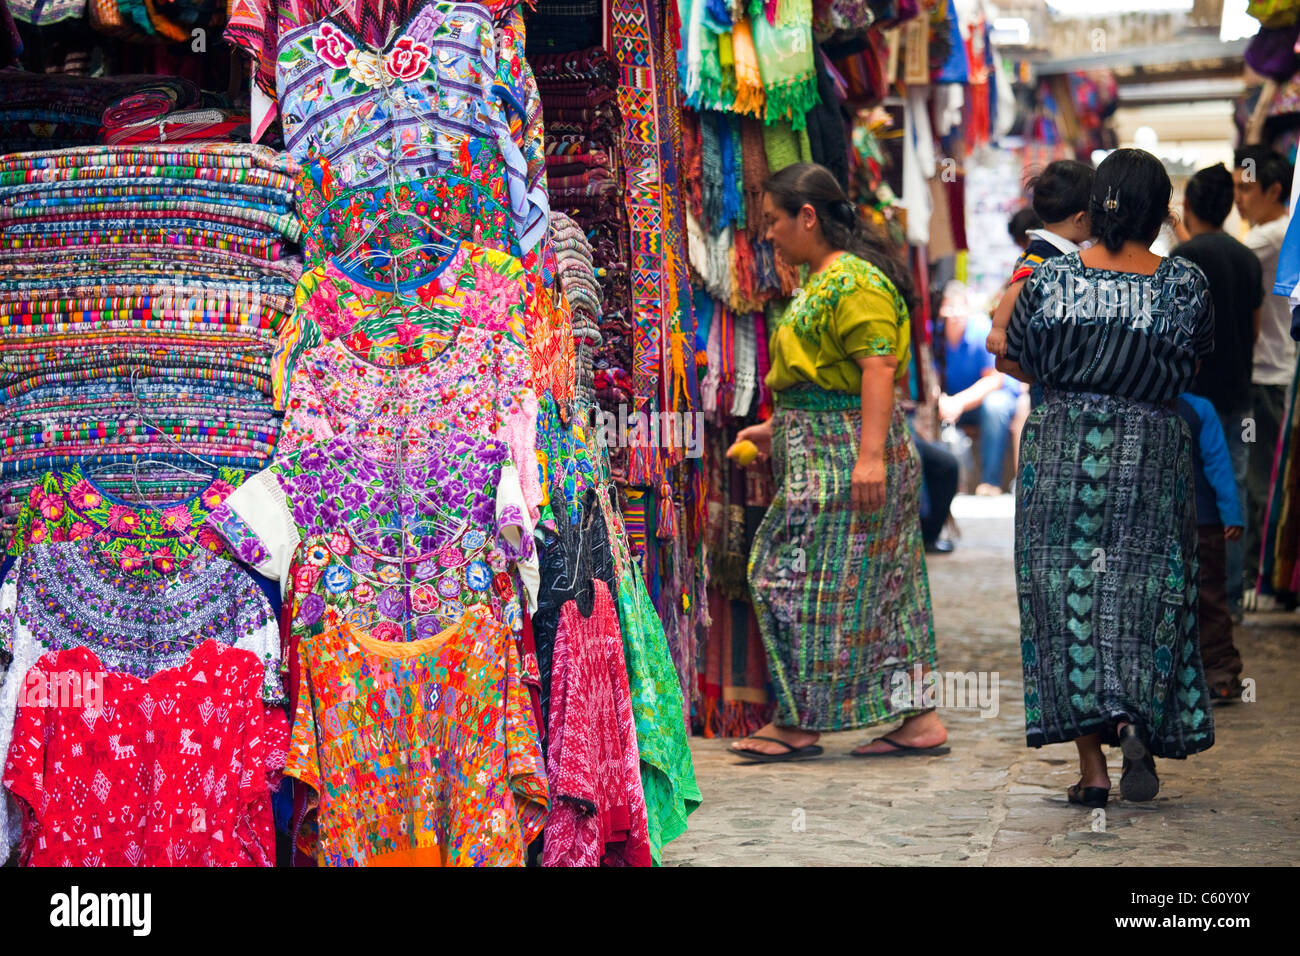 Mercado de Artesanias, Artisans Market, Antigua, Guatemala Stock Photo